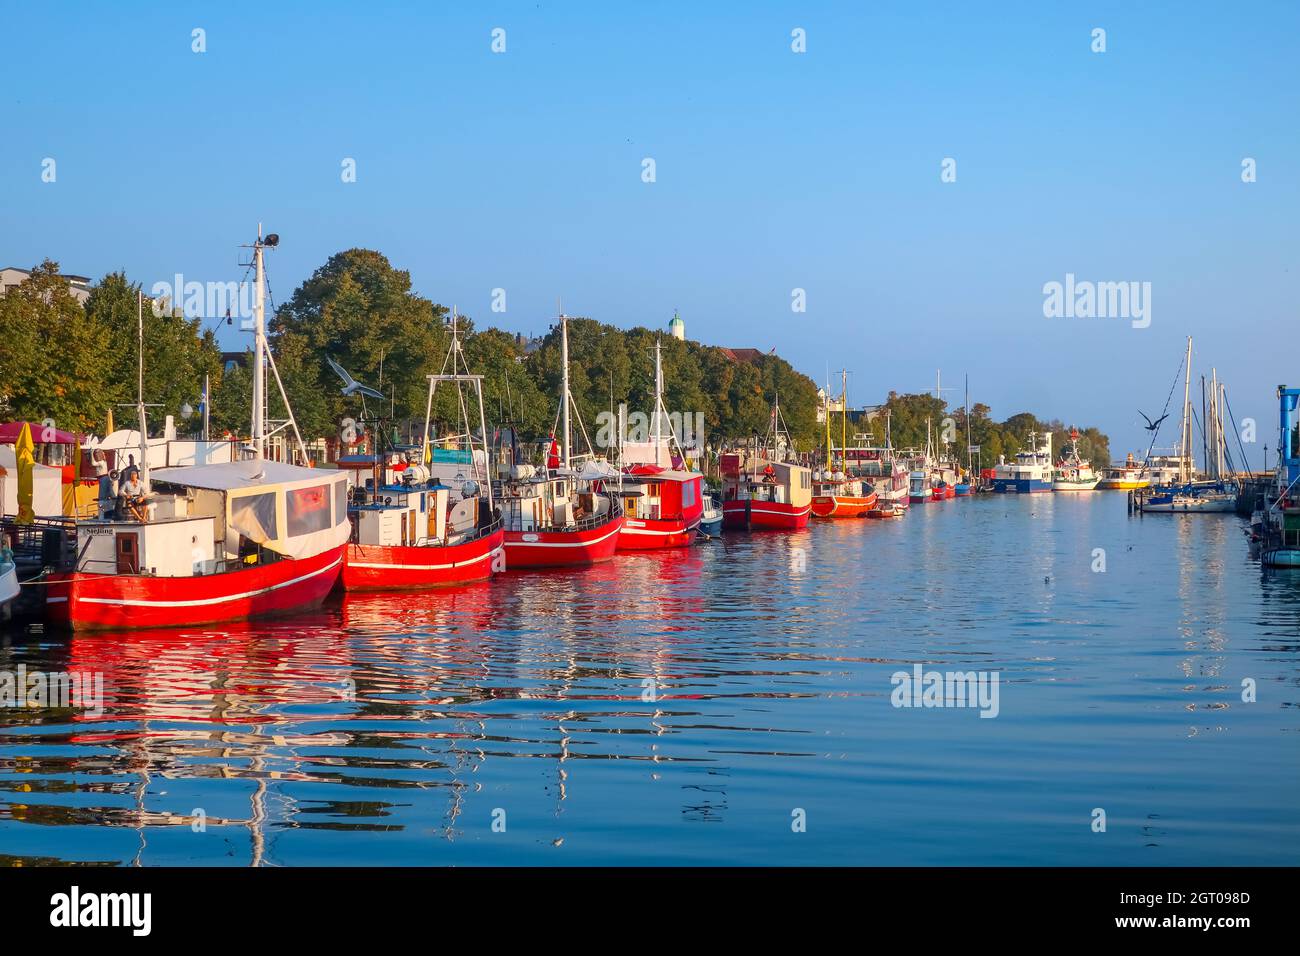 Une ligne de bateaux de pêche et de tourisme rouges borde le canal Alter Strom dans la station côtière de Warnemunde sur la mer Baltique. Banque D'Images